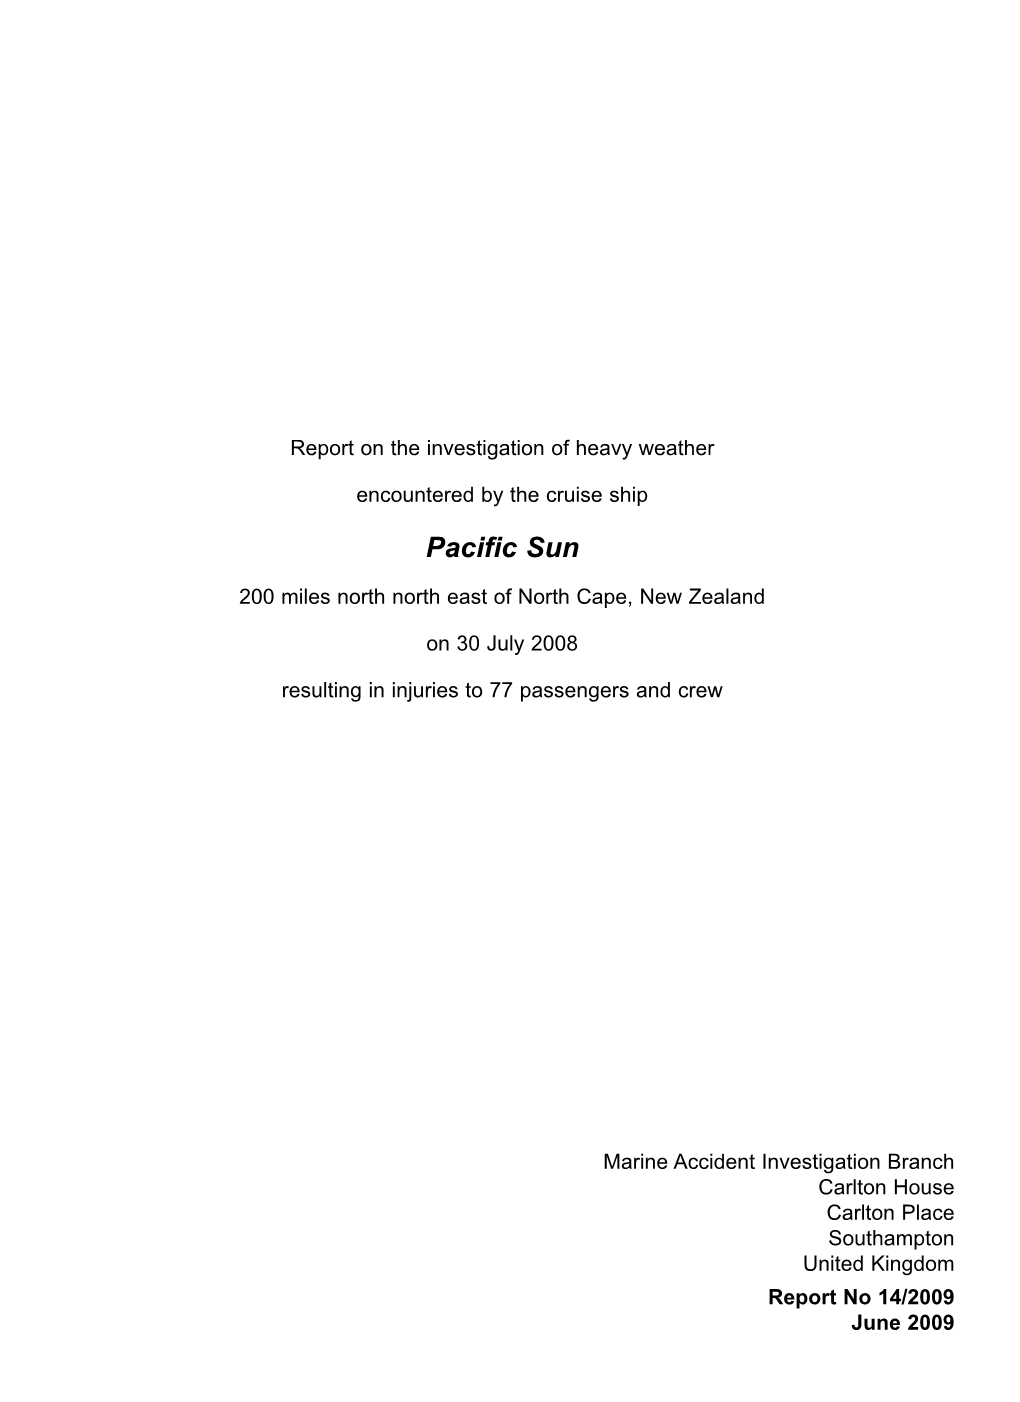 Pacific Sun Report No 14/2009